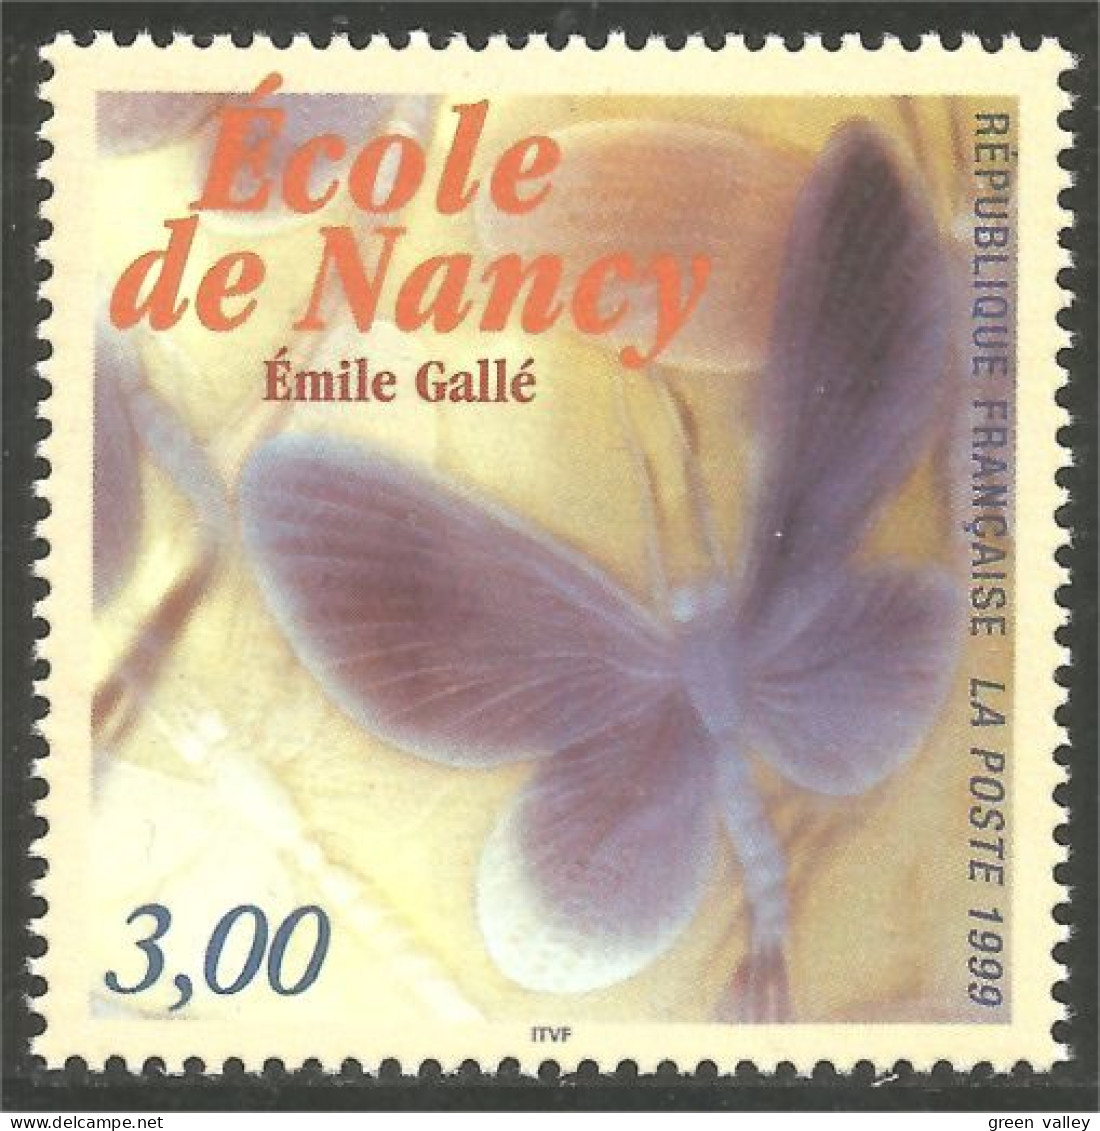 362 France Yv 3246 Papillon Butterfly Gallé Nancy Schmetterling MNH ** Neuf SC (3246-1a) - Glasses & Stained-Glasses